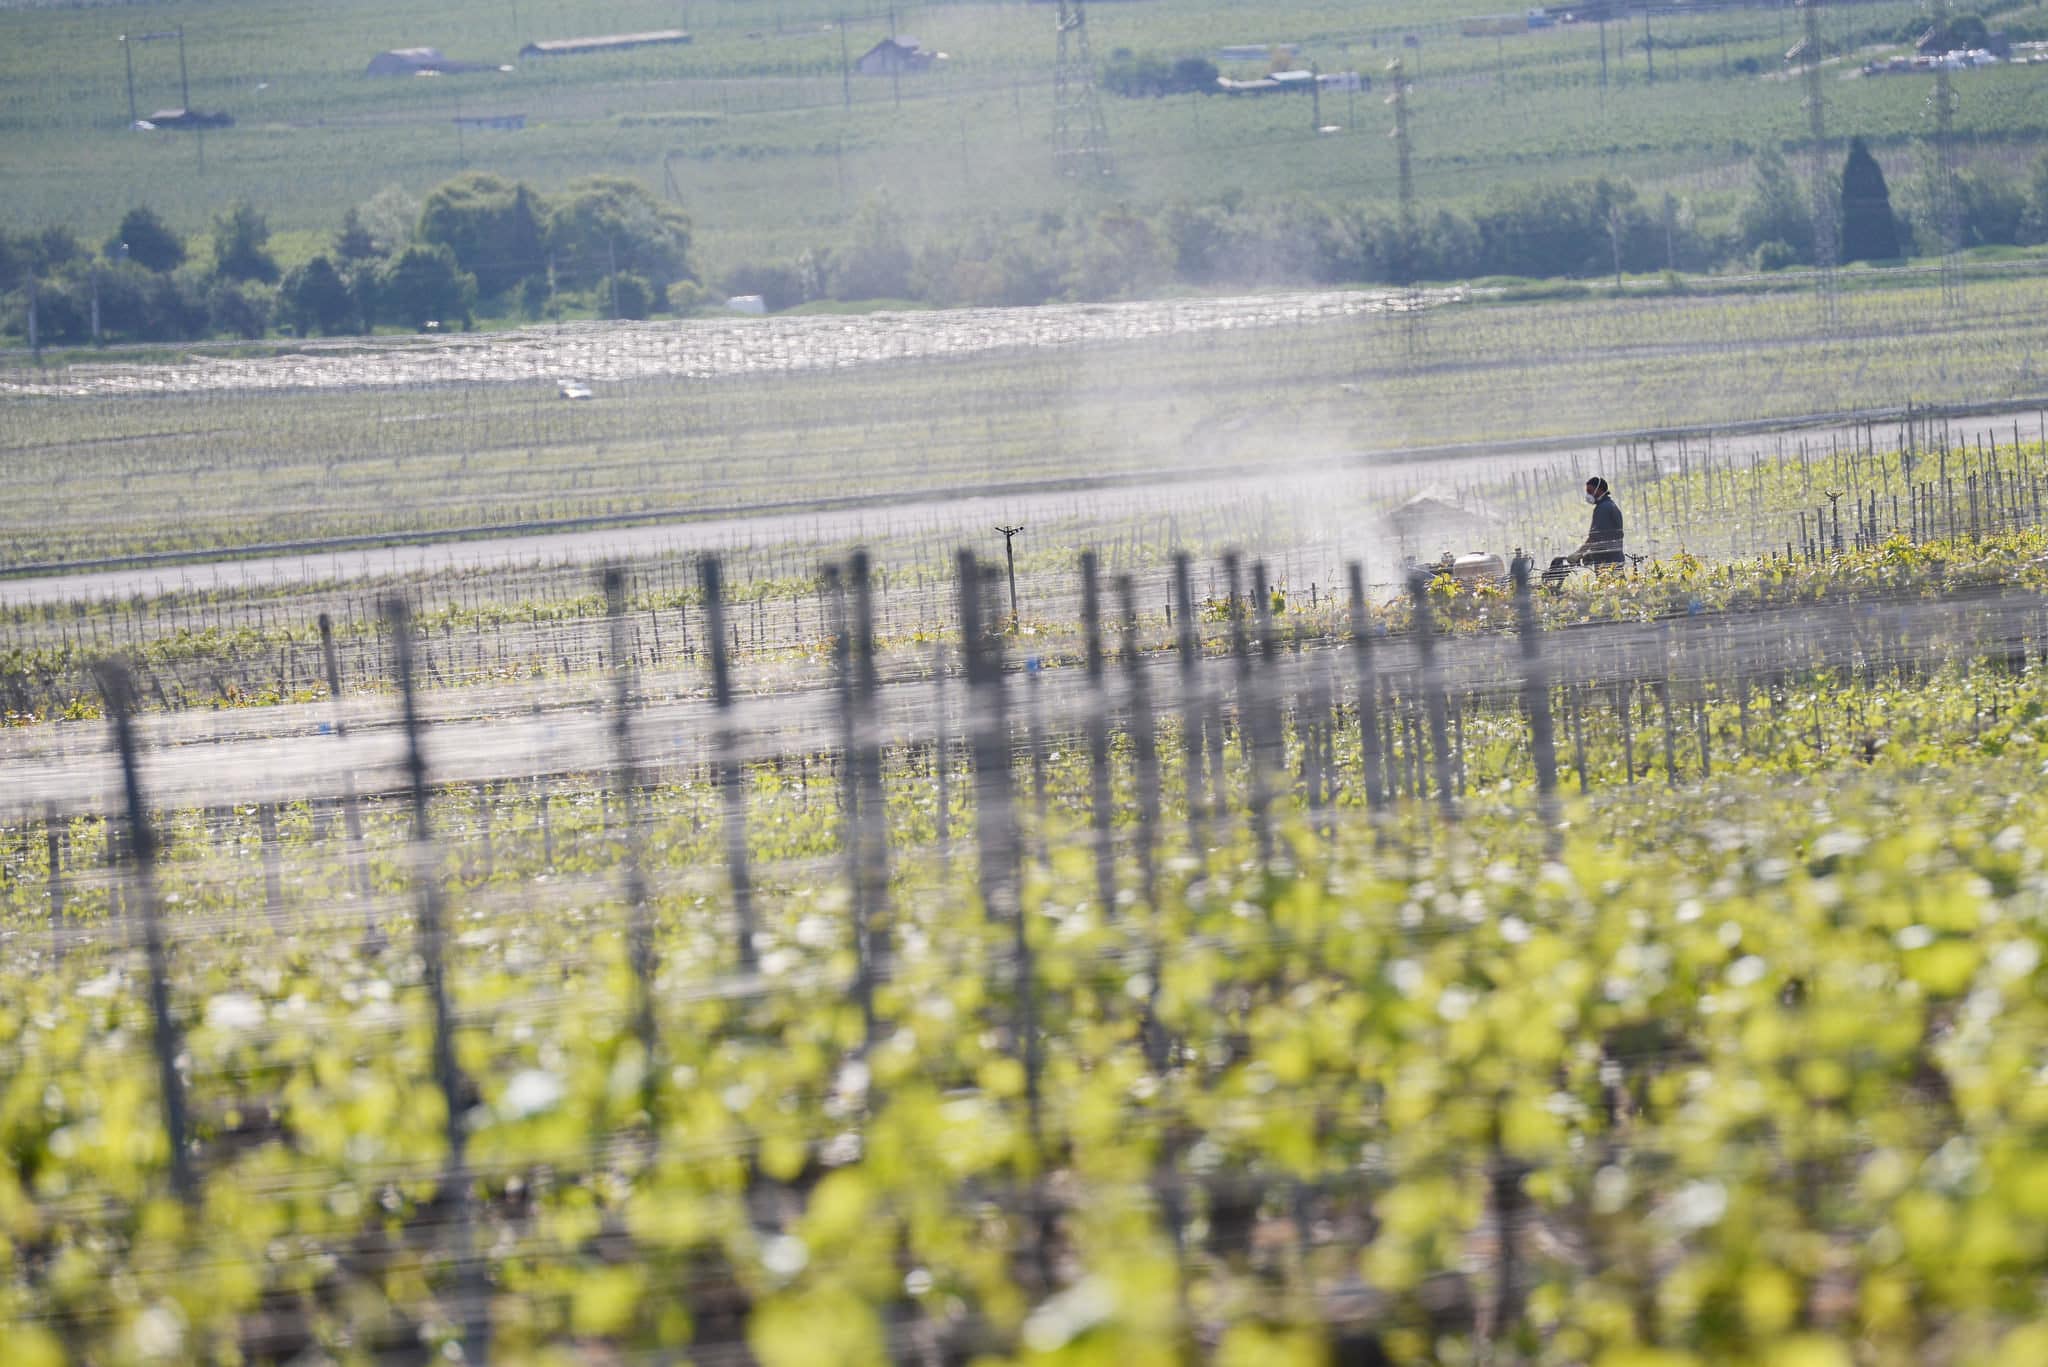 Étude UFC-Que Choisir sur les vins de Bordeaux : les anti-pesticides voient rouge